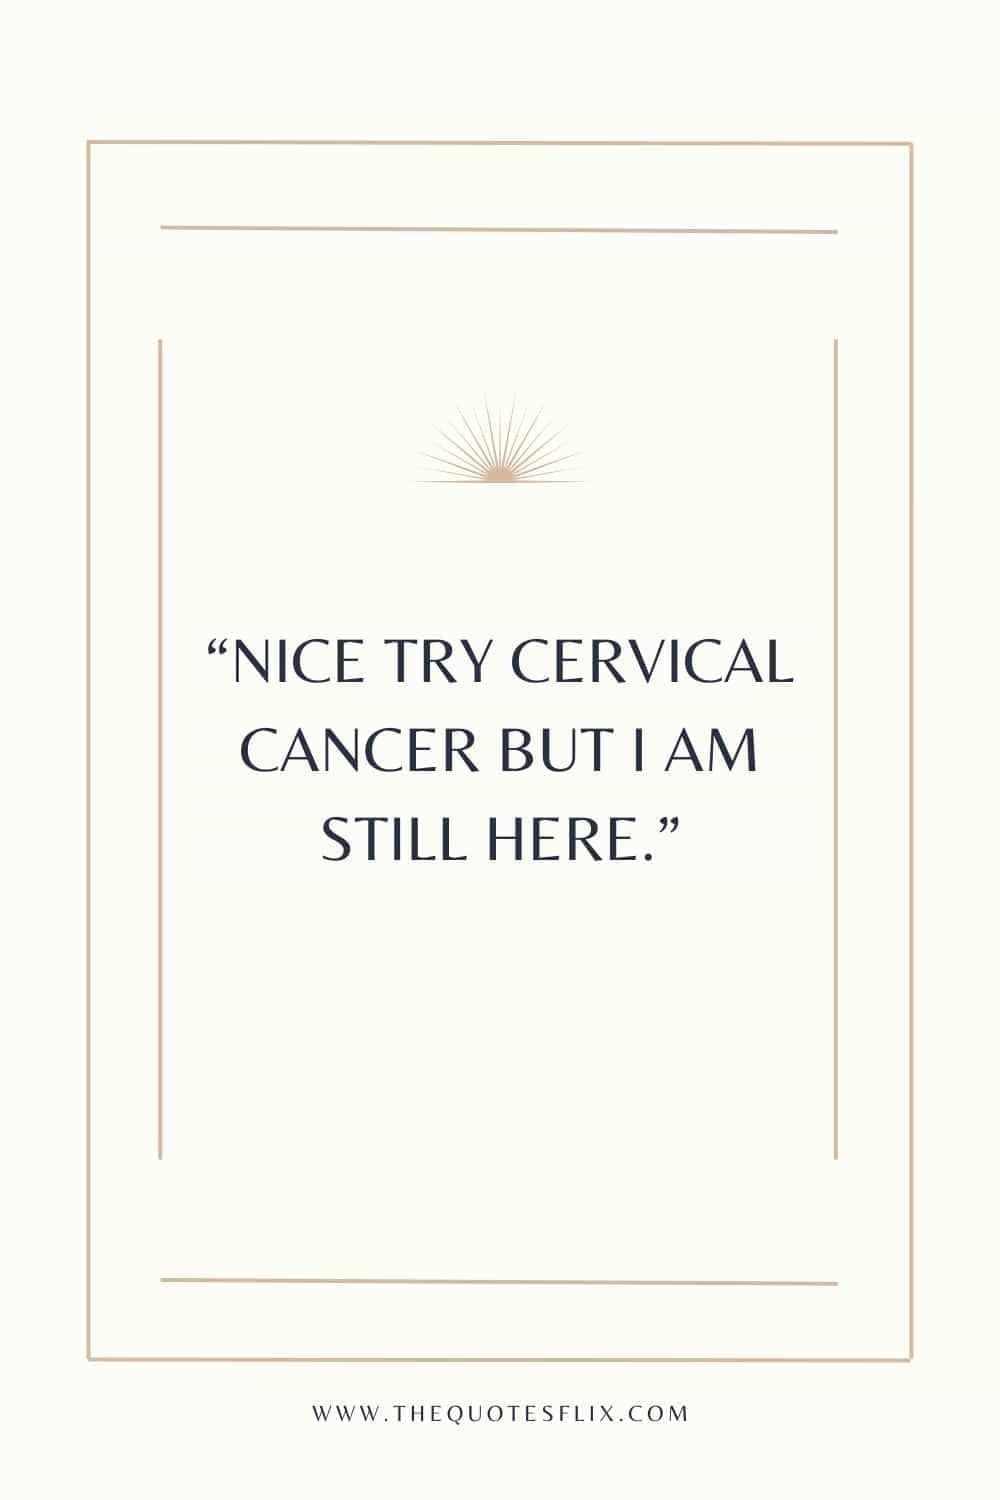 cervical cancer survivor quotes - nice try cervical cancer i am here